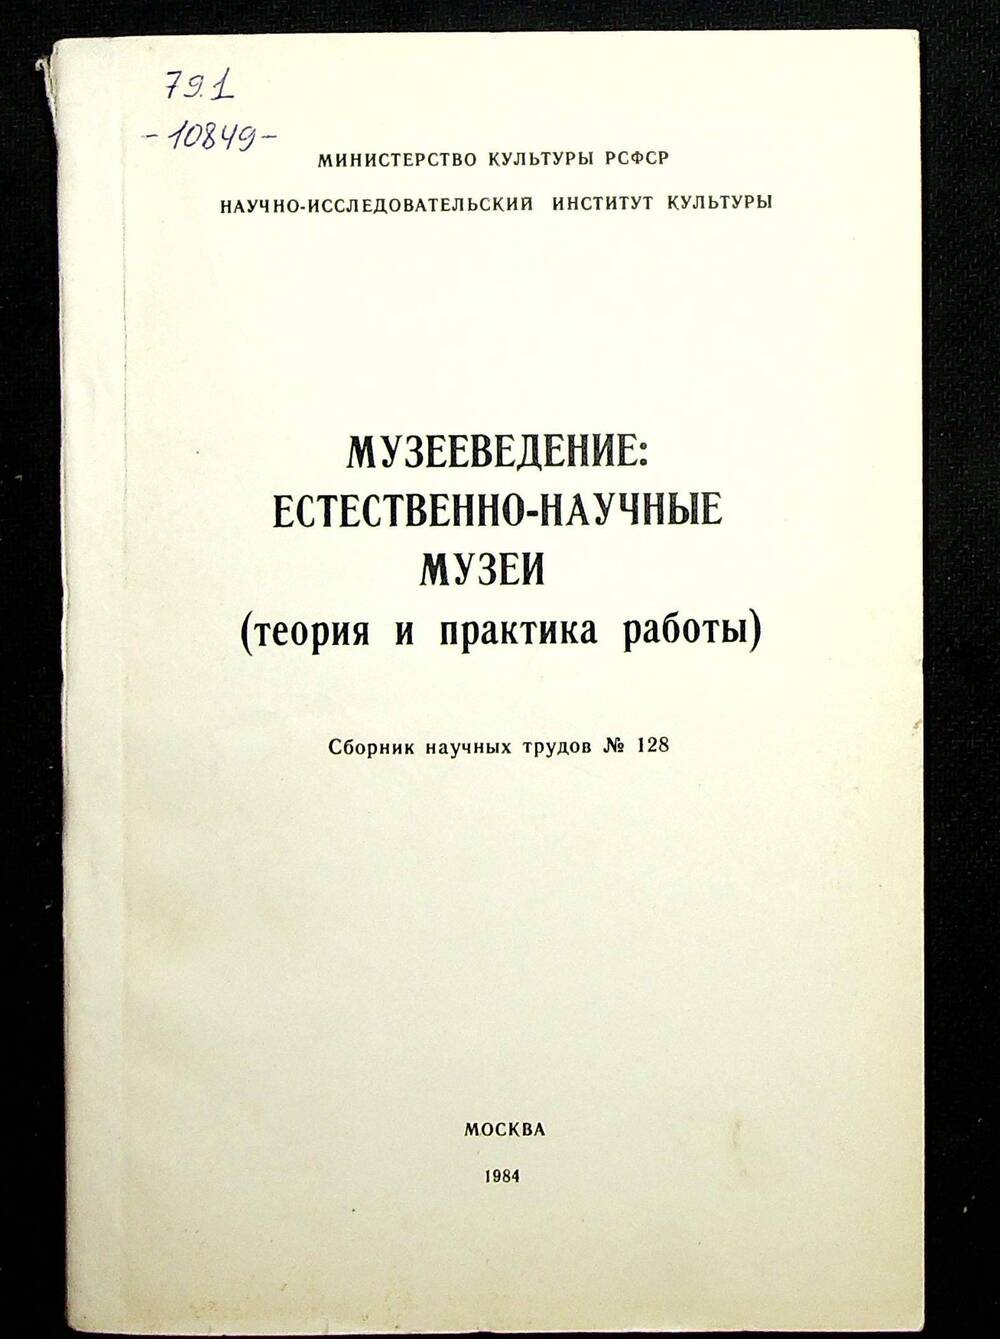 Книга. Музееведение: Естественно - научные музеи. Москва, 1975 г.